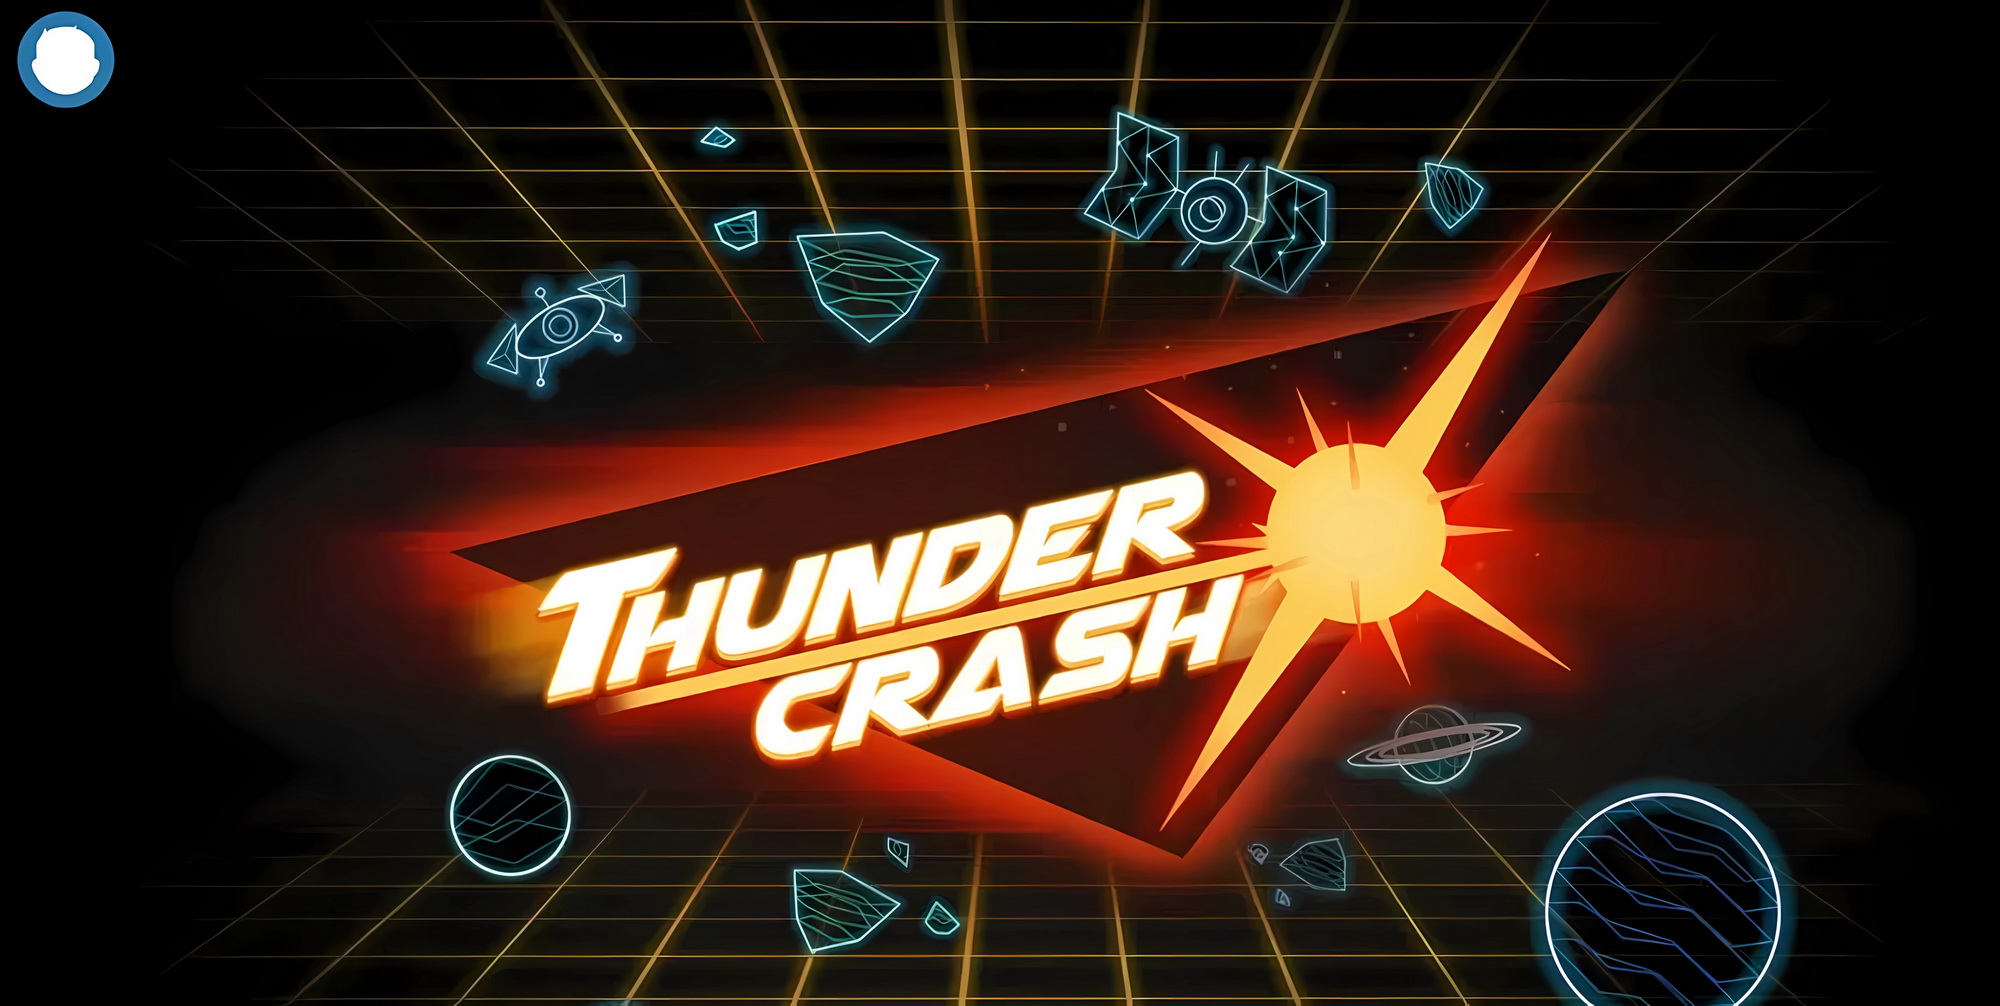 Thunder  Crash Games Reviews.